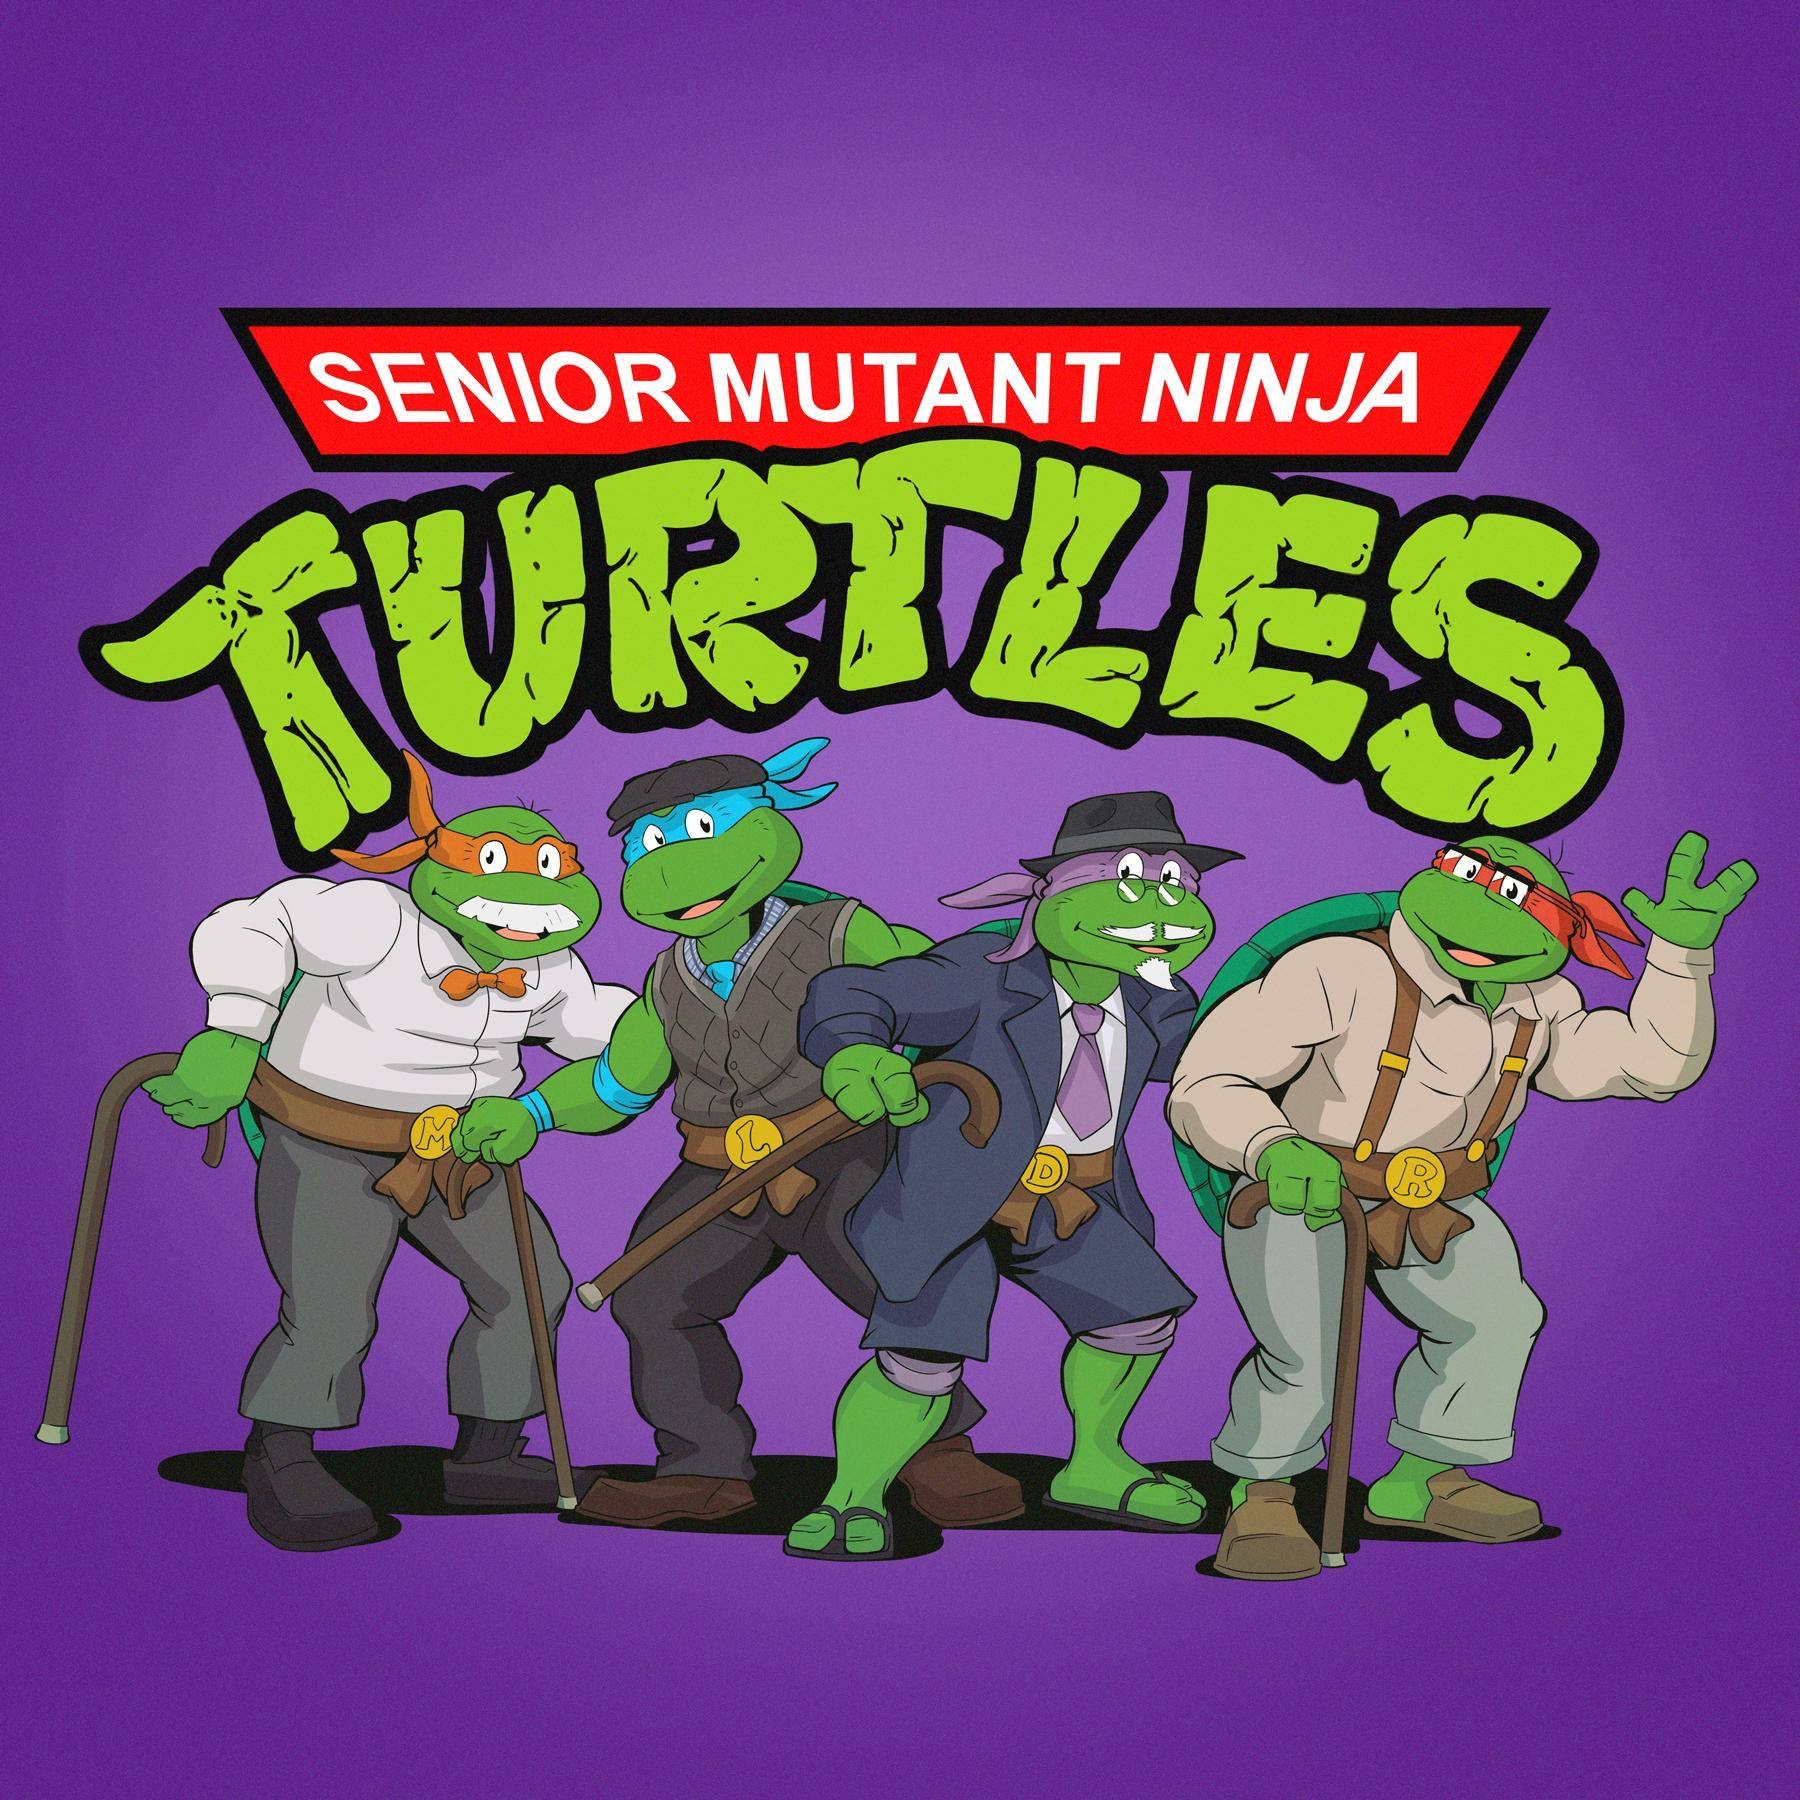 teenage mutant ninja turtles - Senior Mutant Ninja Turules